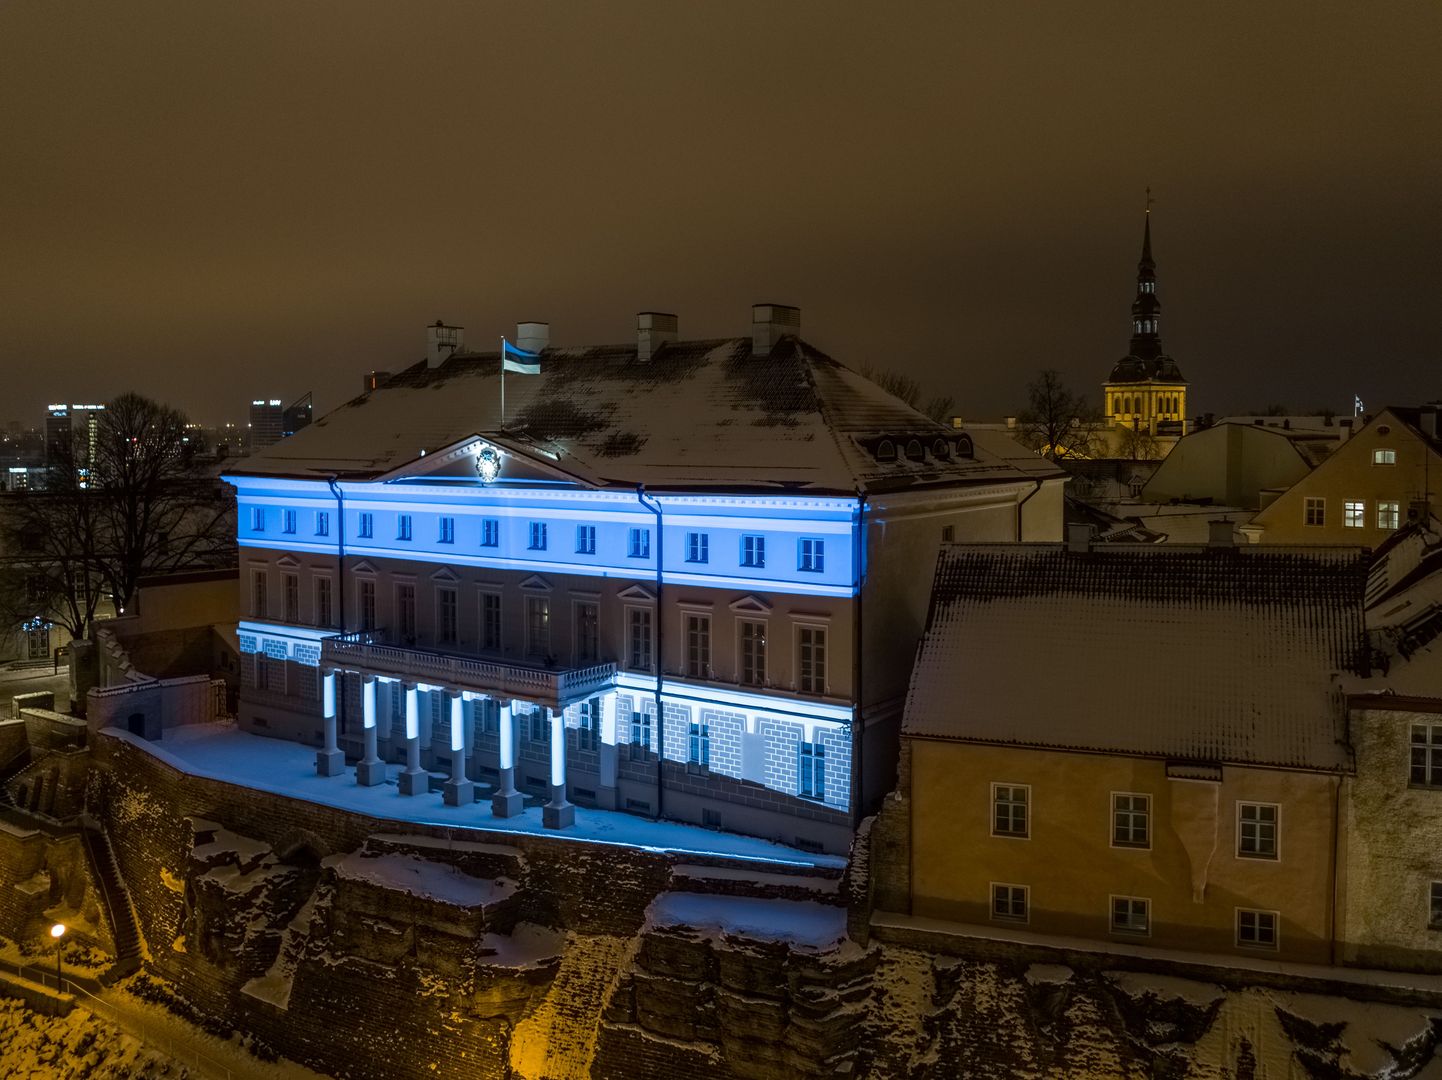 Eesti riigi 100. sünnipäeva eel valgustati Stenbocki maja sinimustvalgesse rüüsse. Tavaliselt peetakse valitsuse istungid selles hoones.